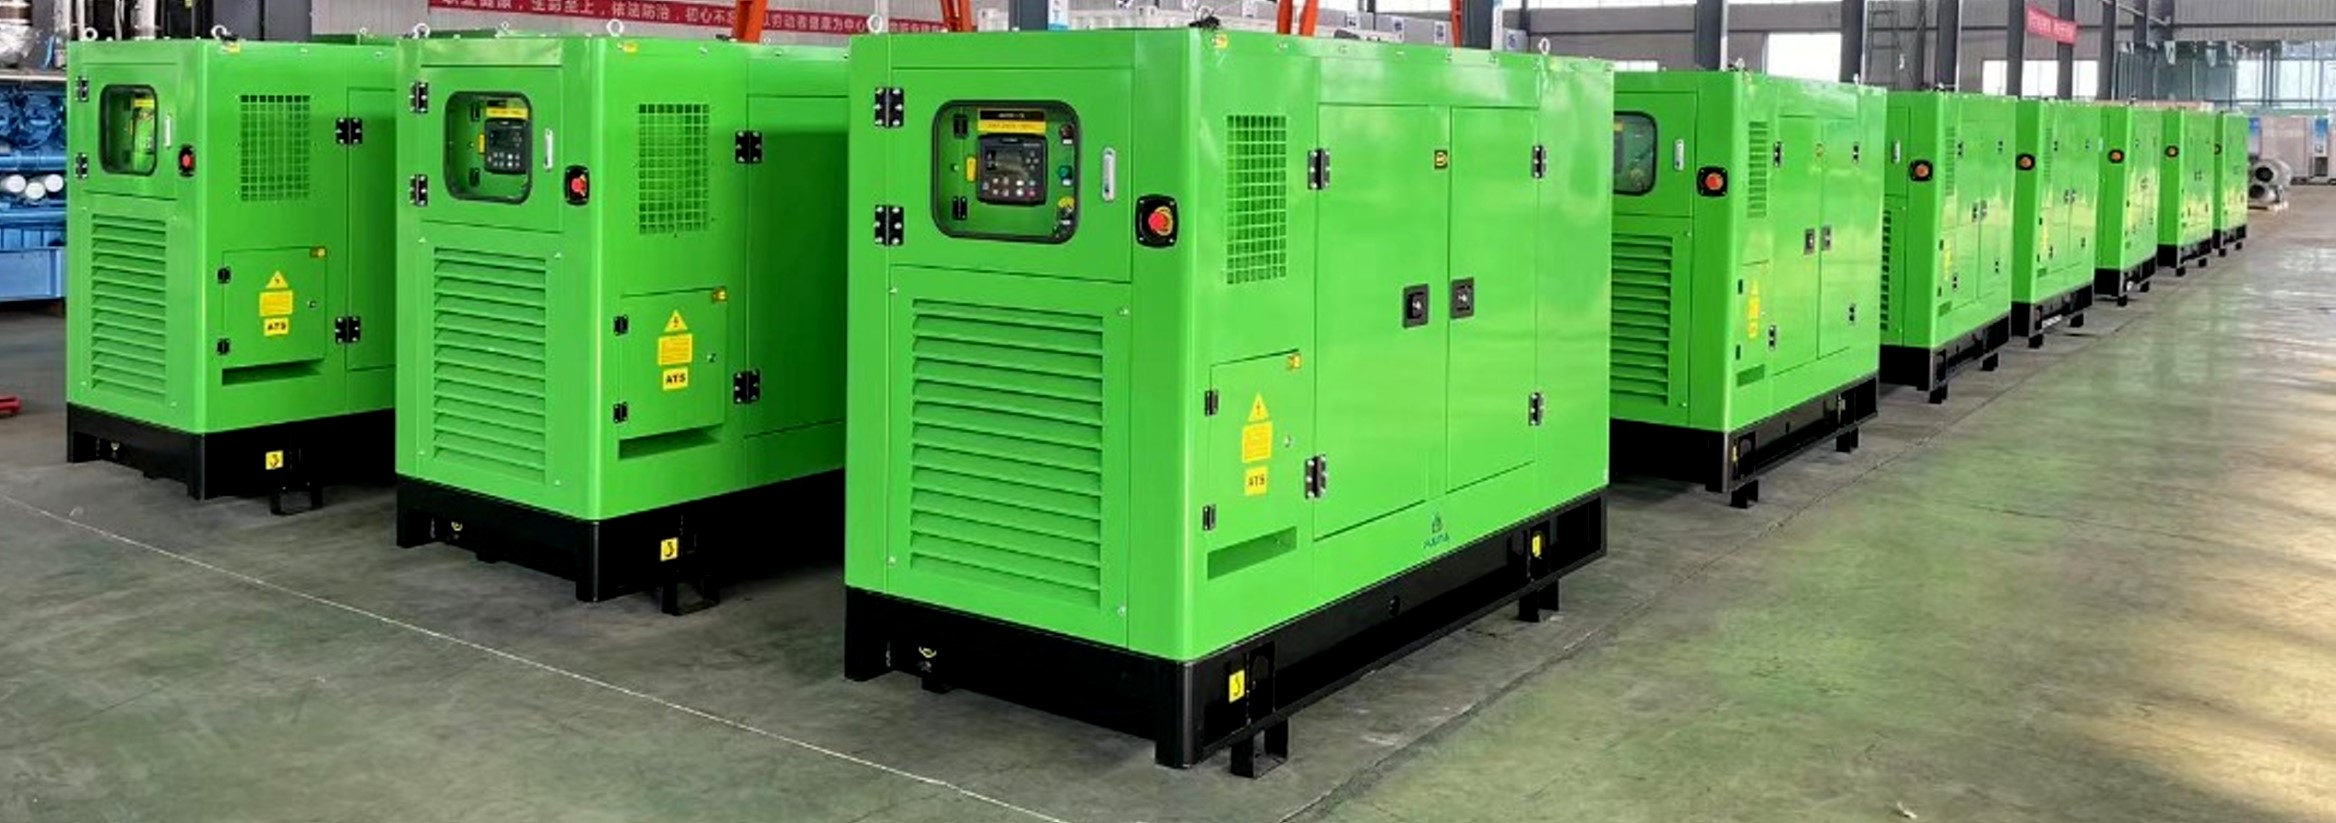 NEW industrial diesel gas generators